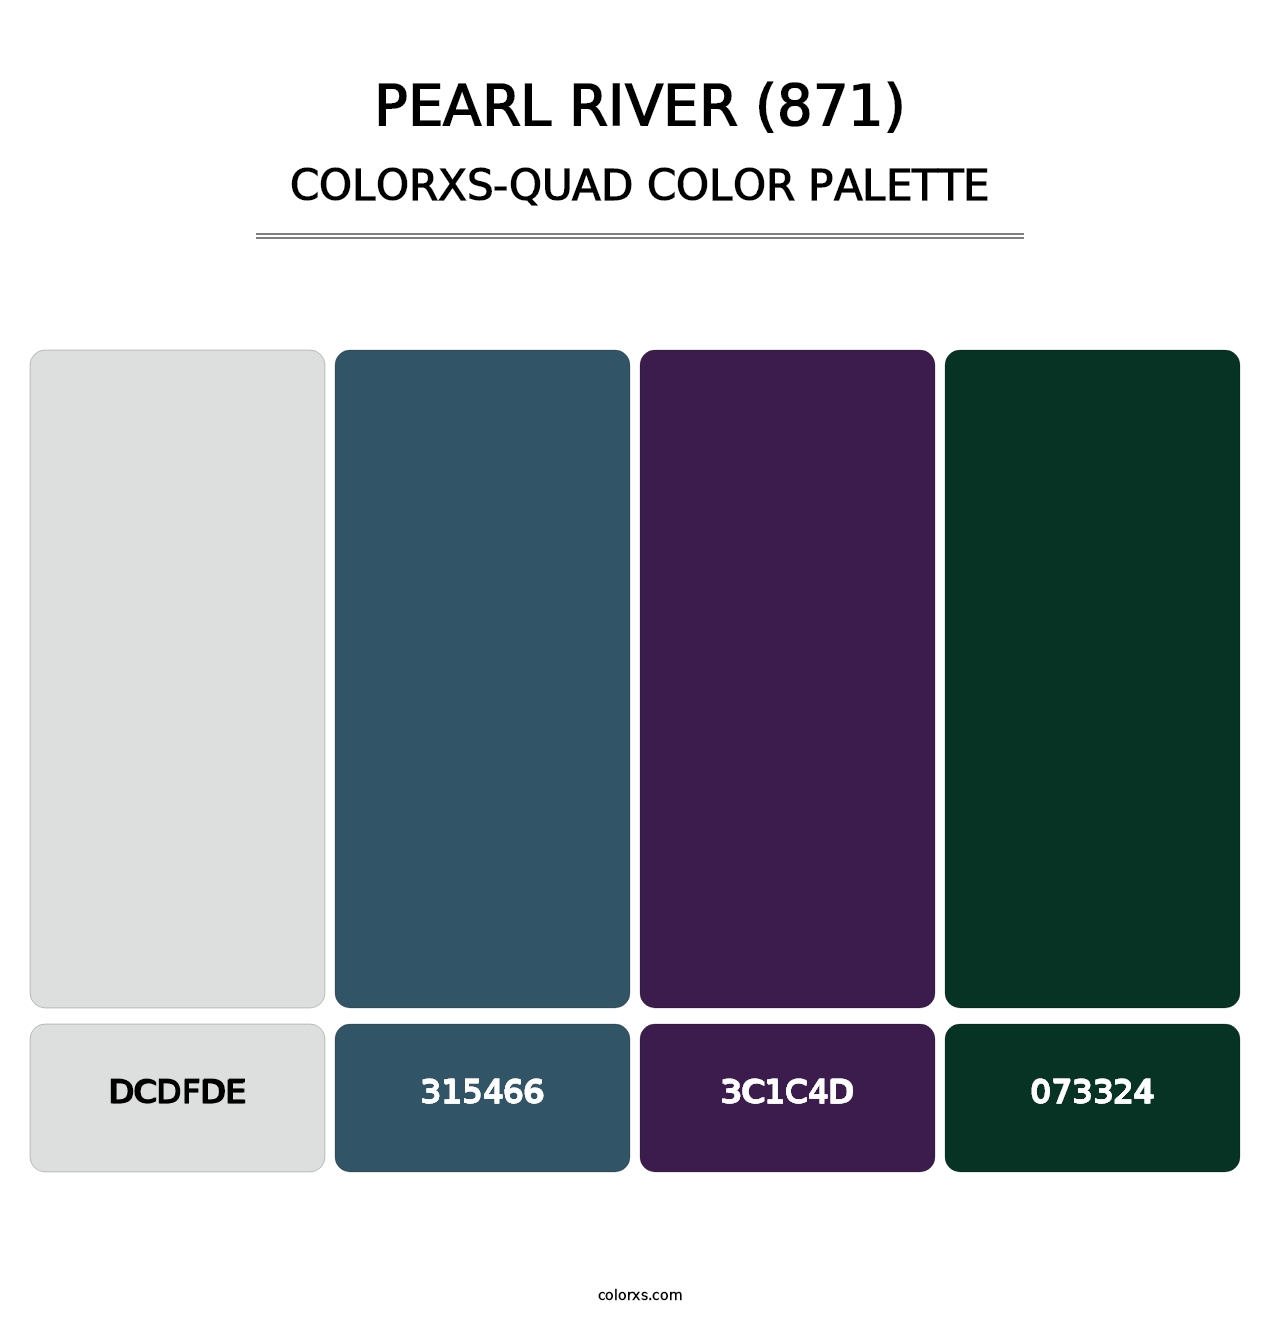 Pearl River (871) - Colorxs Quad Palette